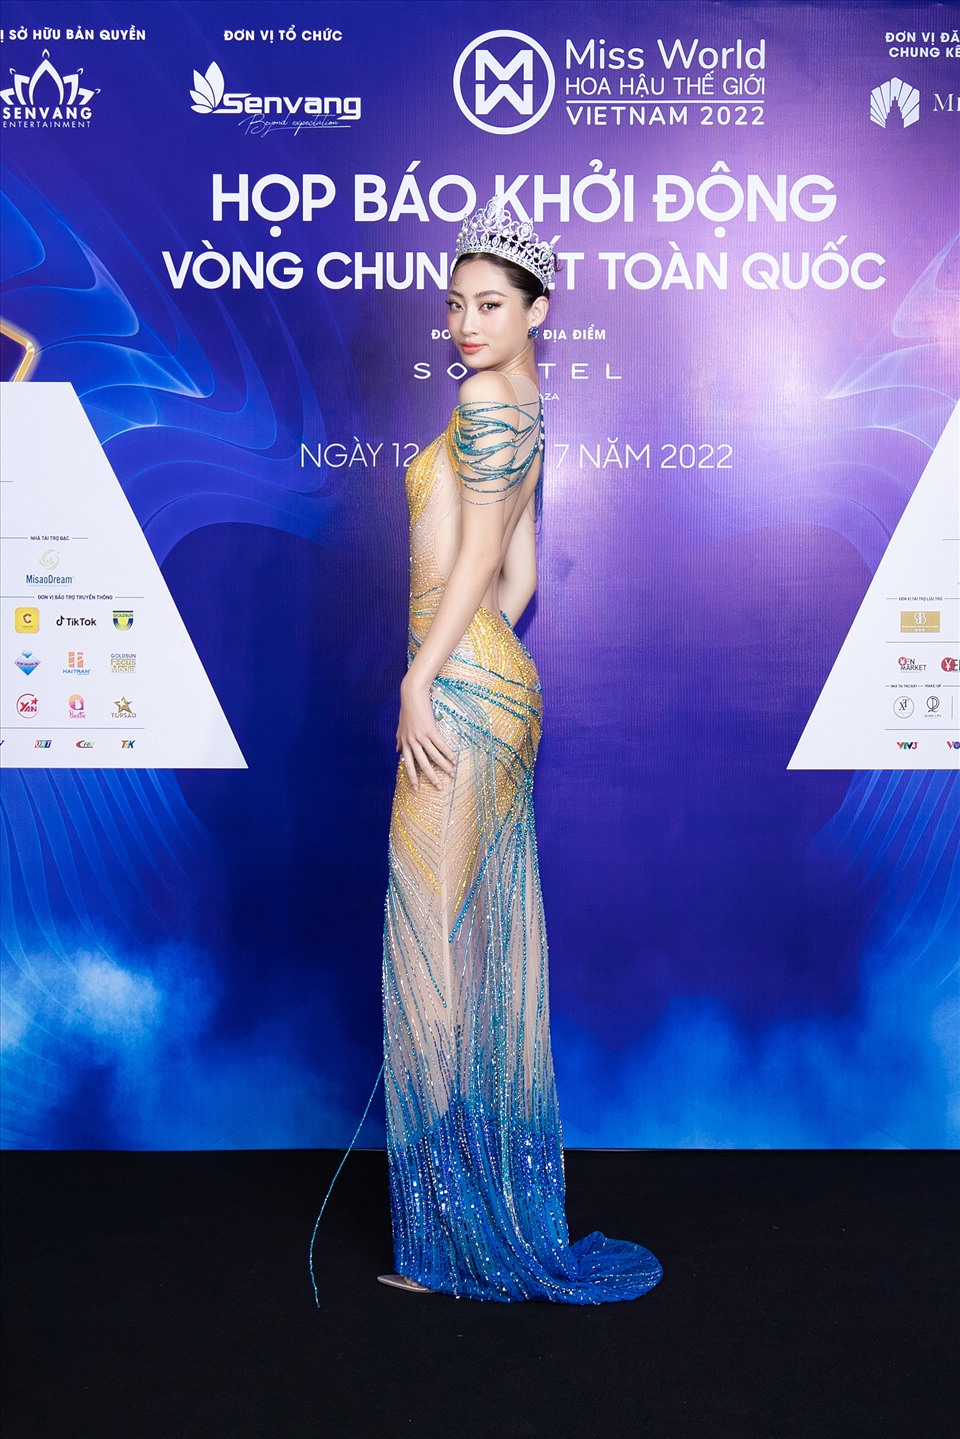 Miss World Vietnam 2019 Lương Thùy Linh nổi bật trong chiếc đầm dạ hội của NTK Thượng Gia Kỳ mang 2 sắc xanh-vàng với những đường nét ôm trọn tỉ lệ cơ thể cùng những đính kết công phu. Ảnh: Sen Vàng.